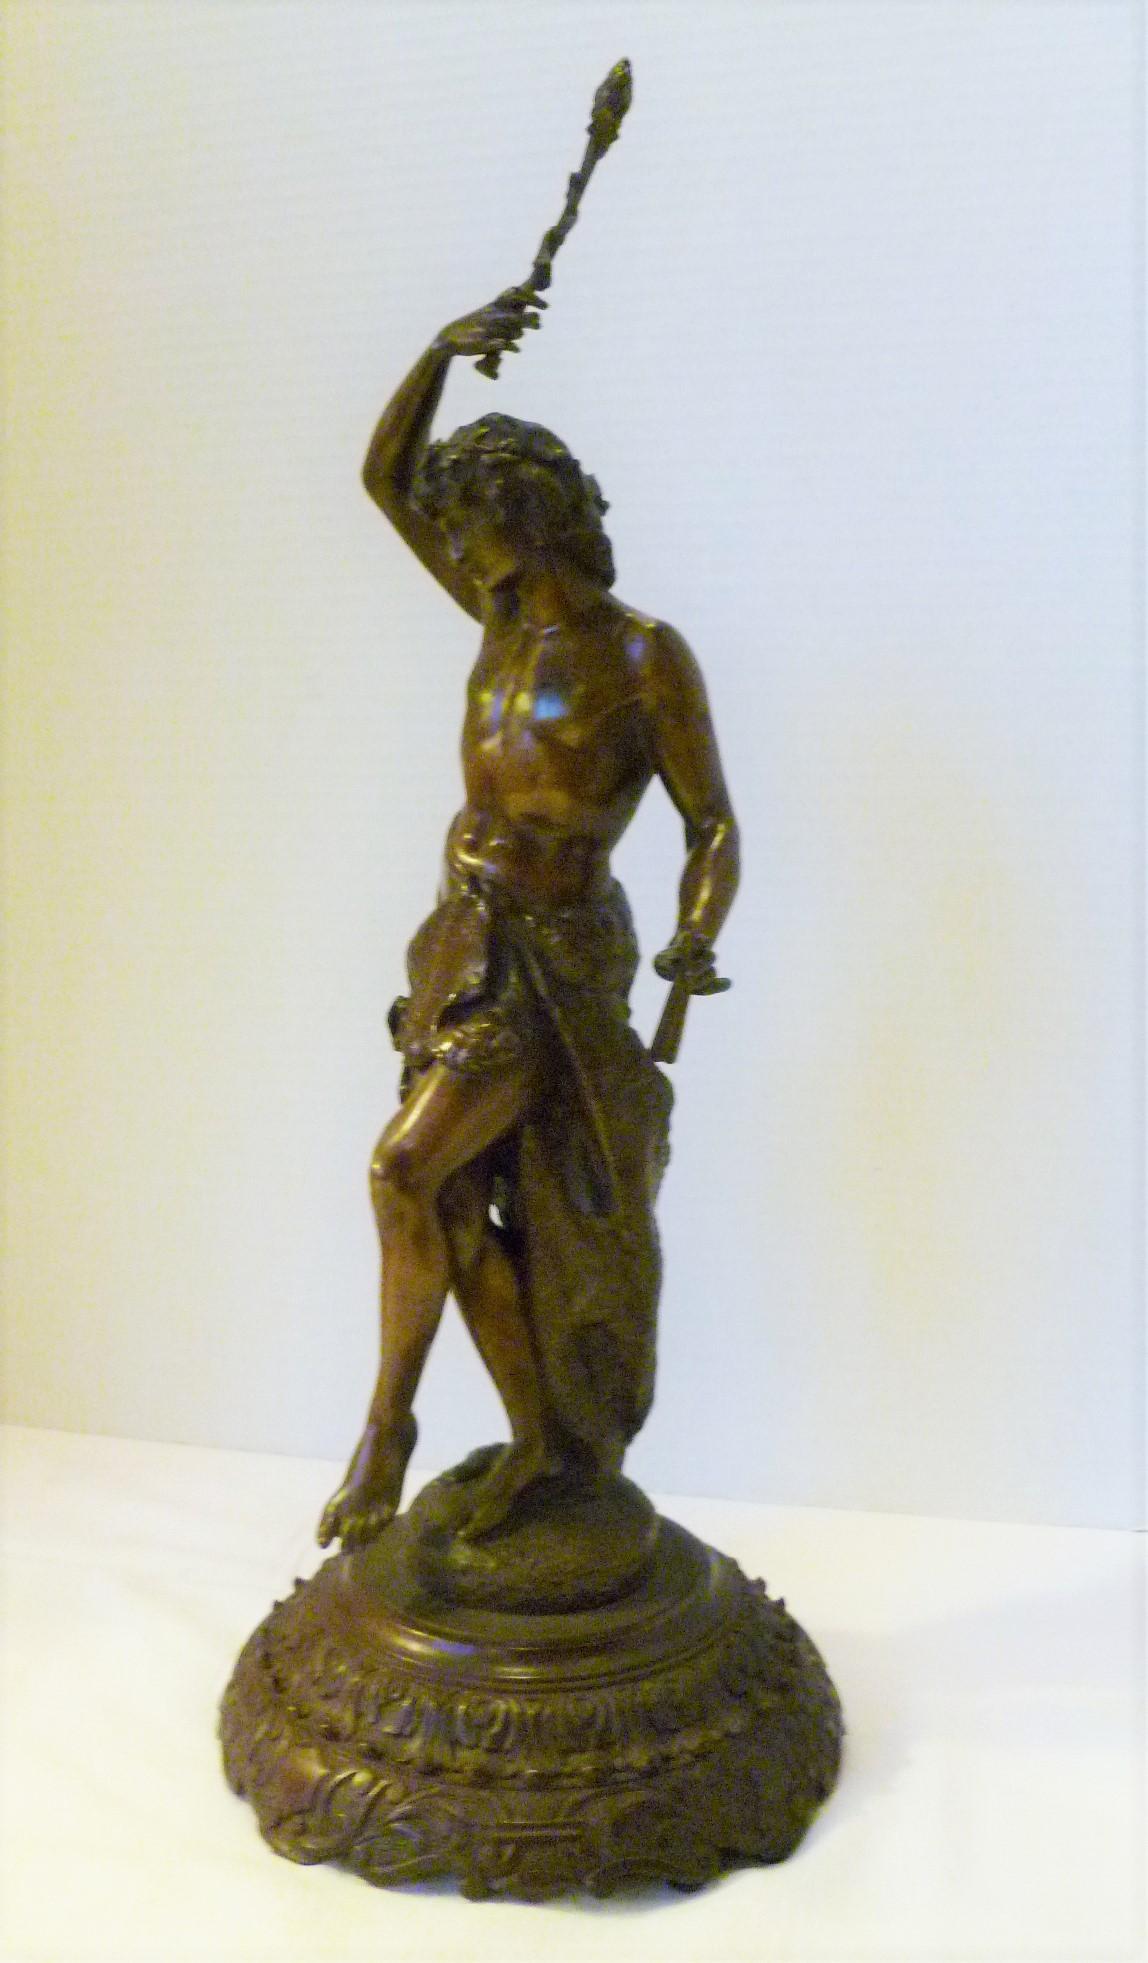 Äußerst detaillierte und fein ziselierte Bronzefigur einer Pane aus dem 19. Jahrhundert, die zum Feiern oder Tanz vielleicht in der Bacchanalie dient. Flute, erhabene Lorbeerspitze, Löwenhautmantel, Blumenkopfgirland und exquisite Details betonen